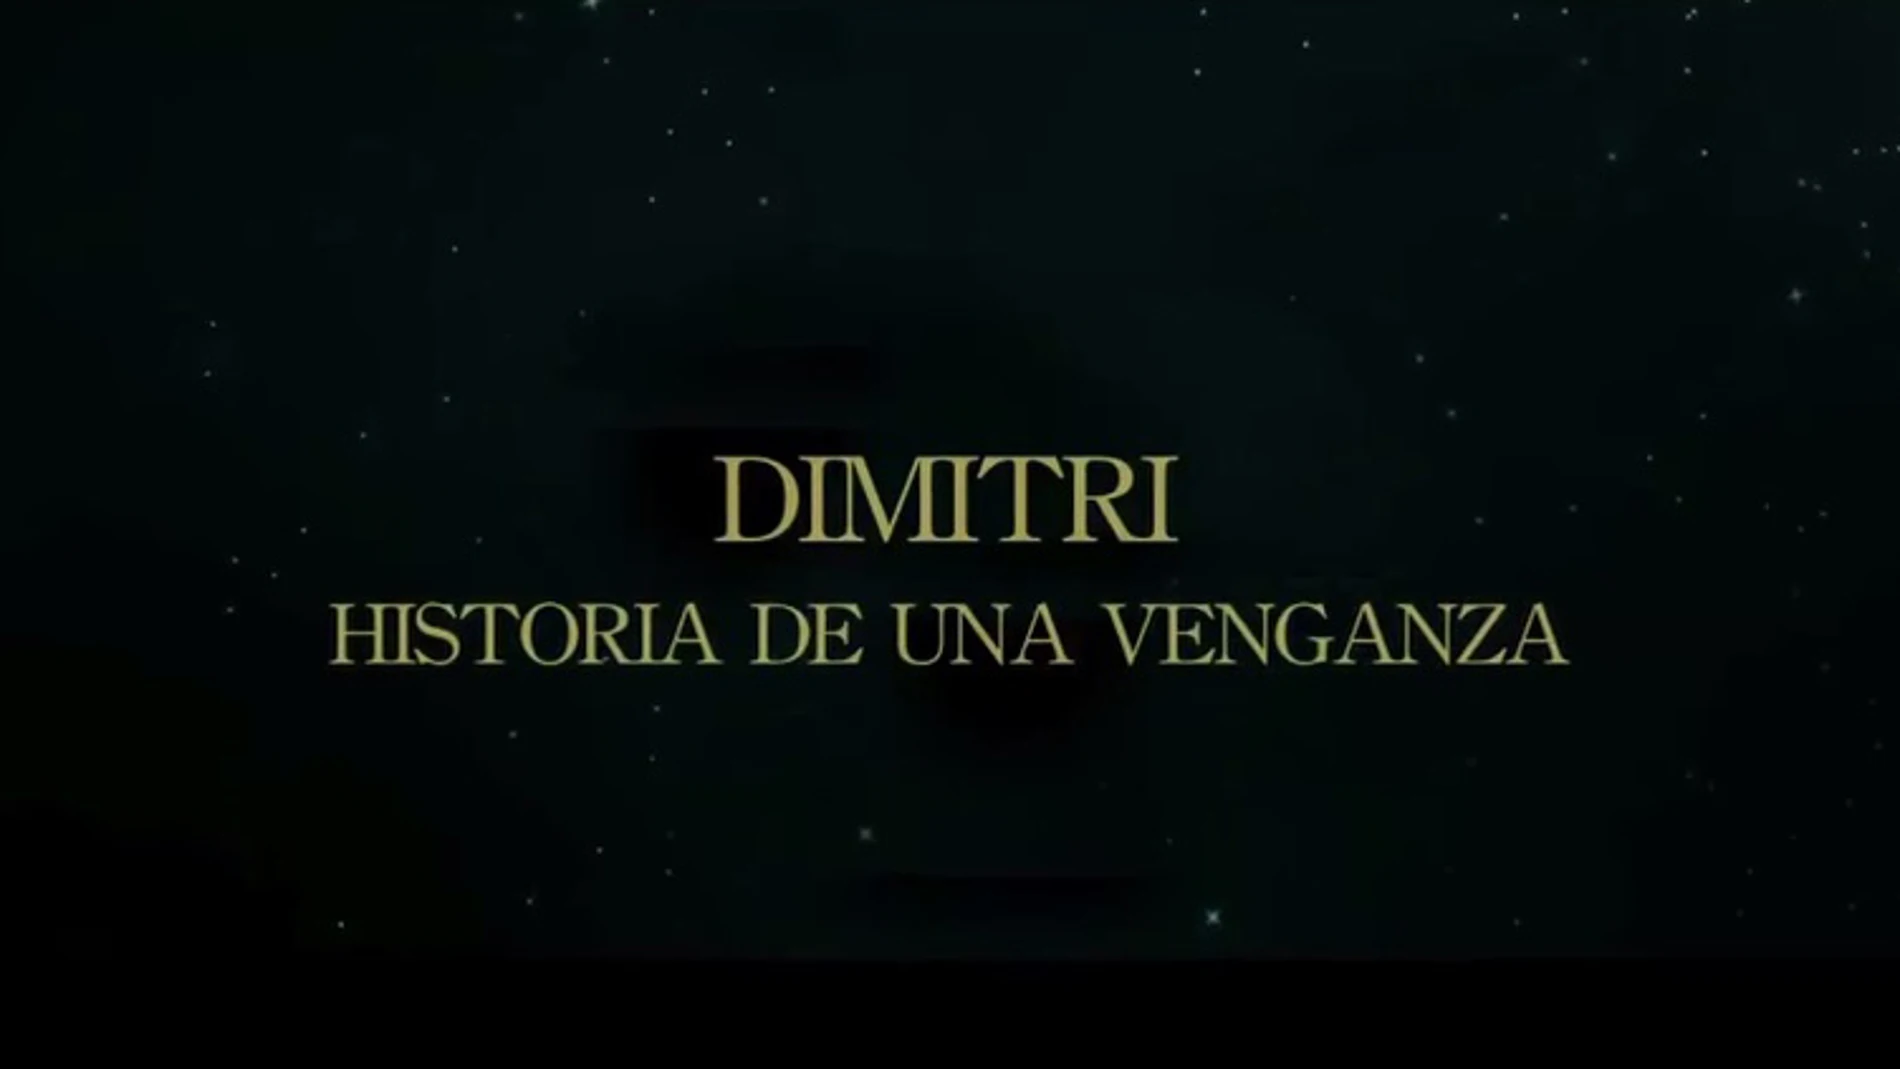 Dimitri, historia de una venganza